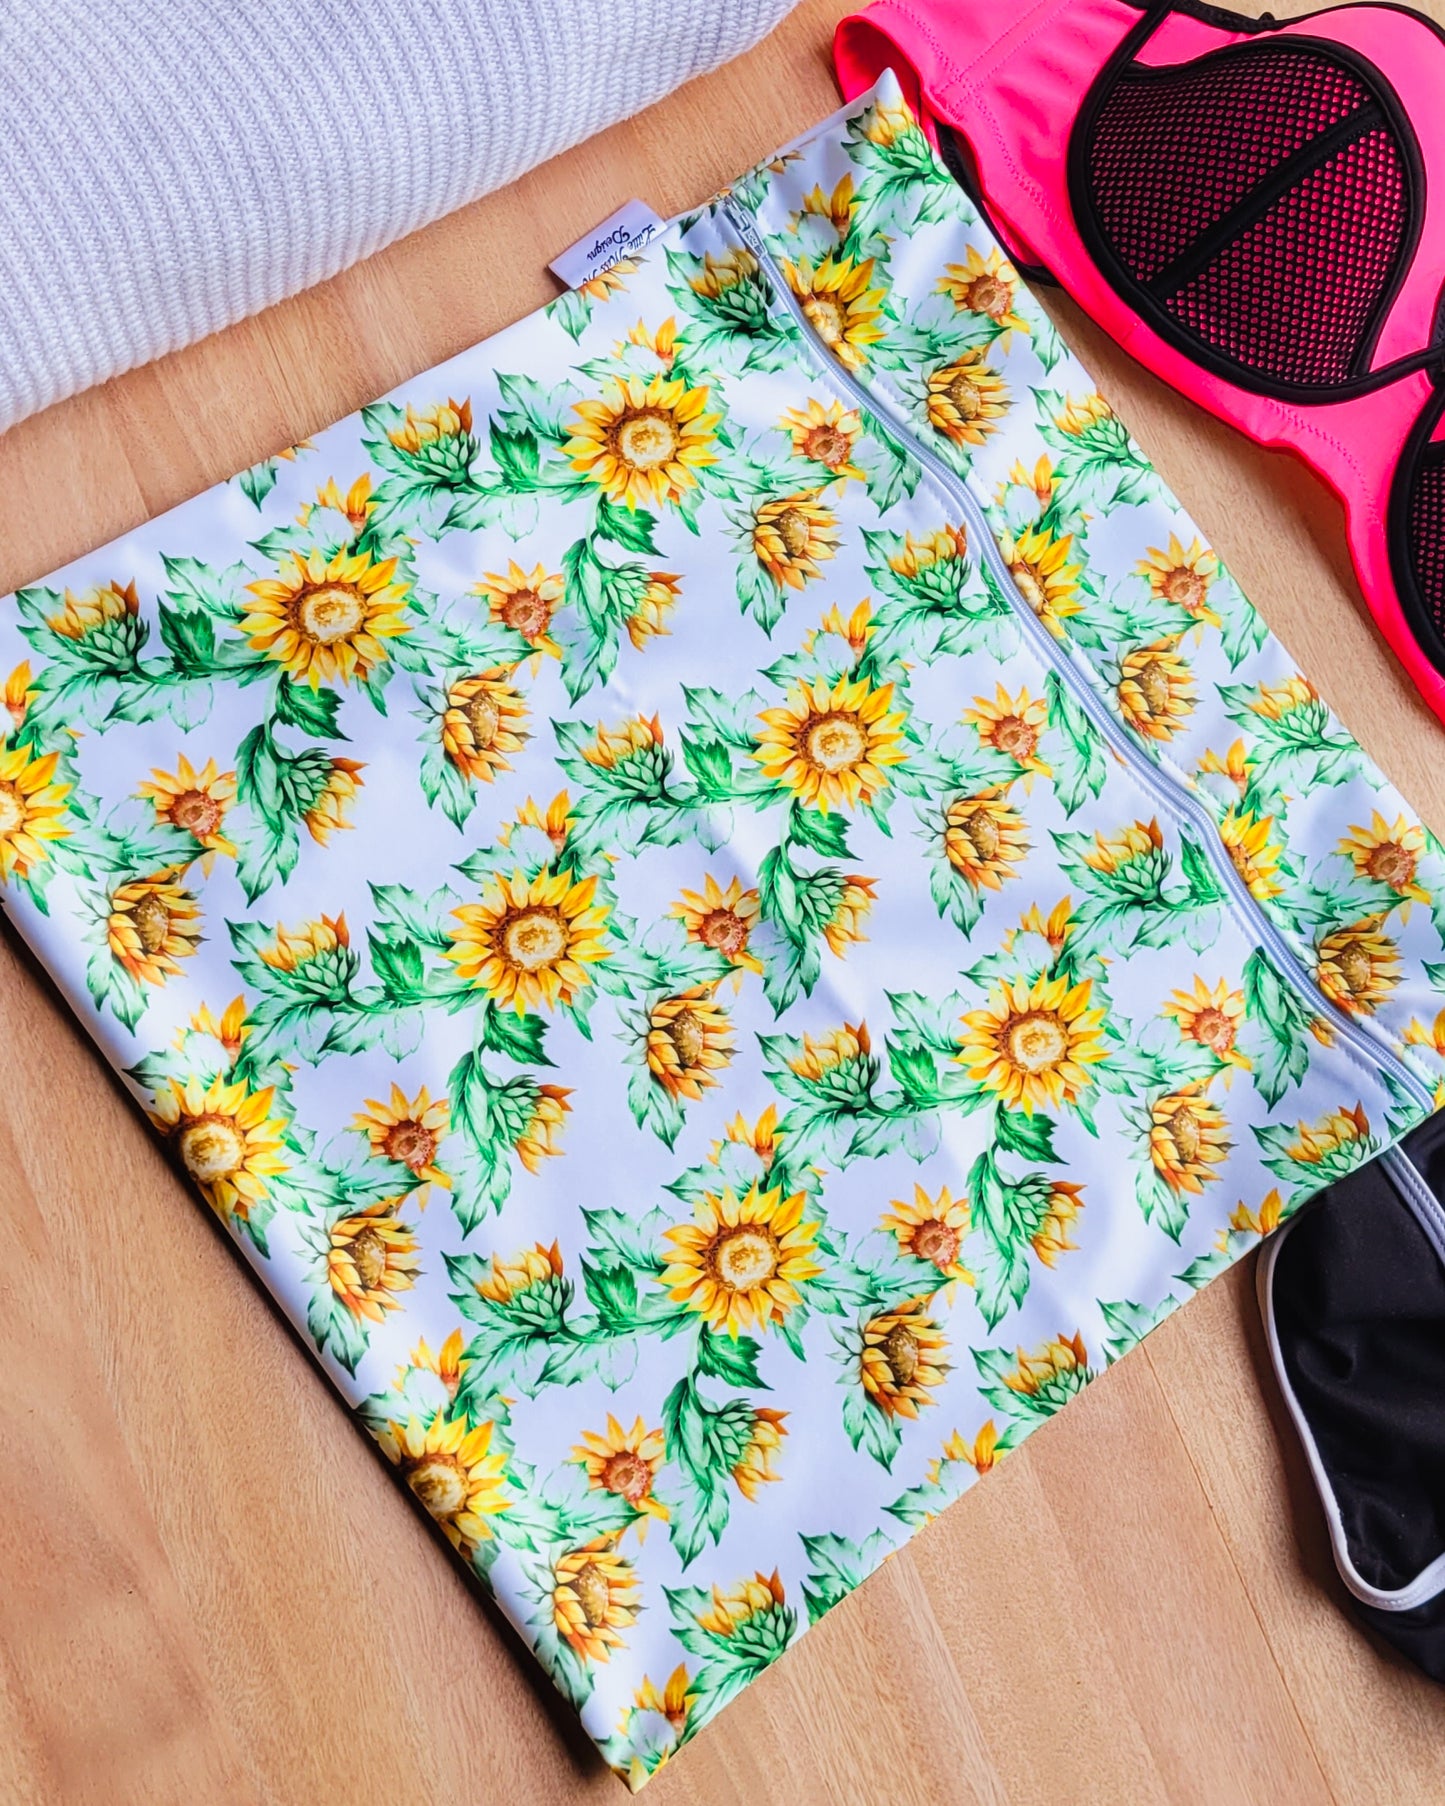 Sunflowers Wet Bag